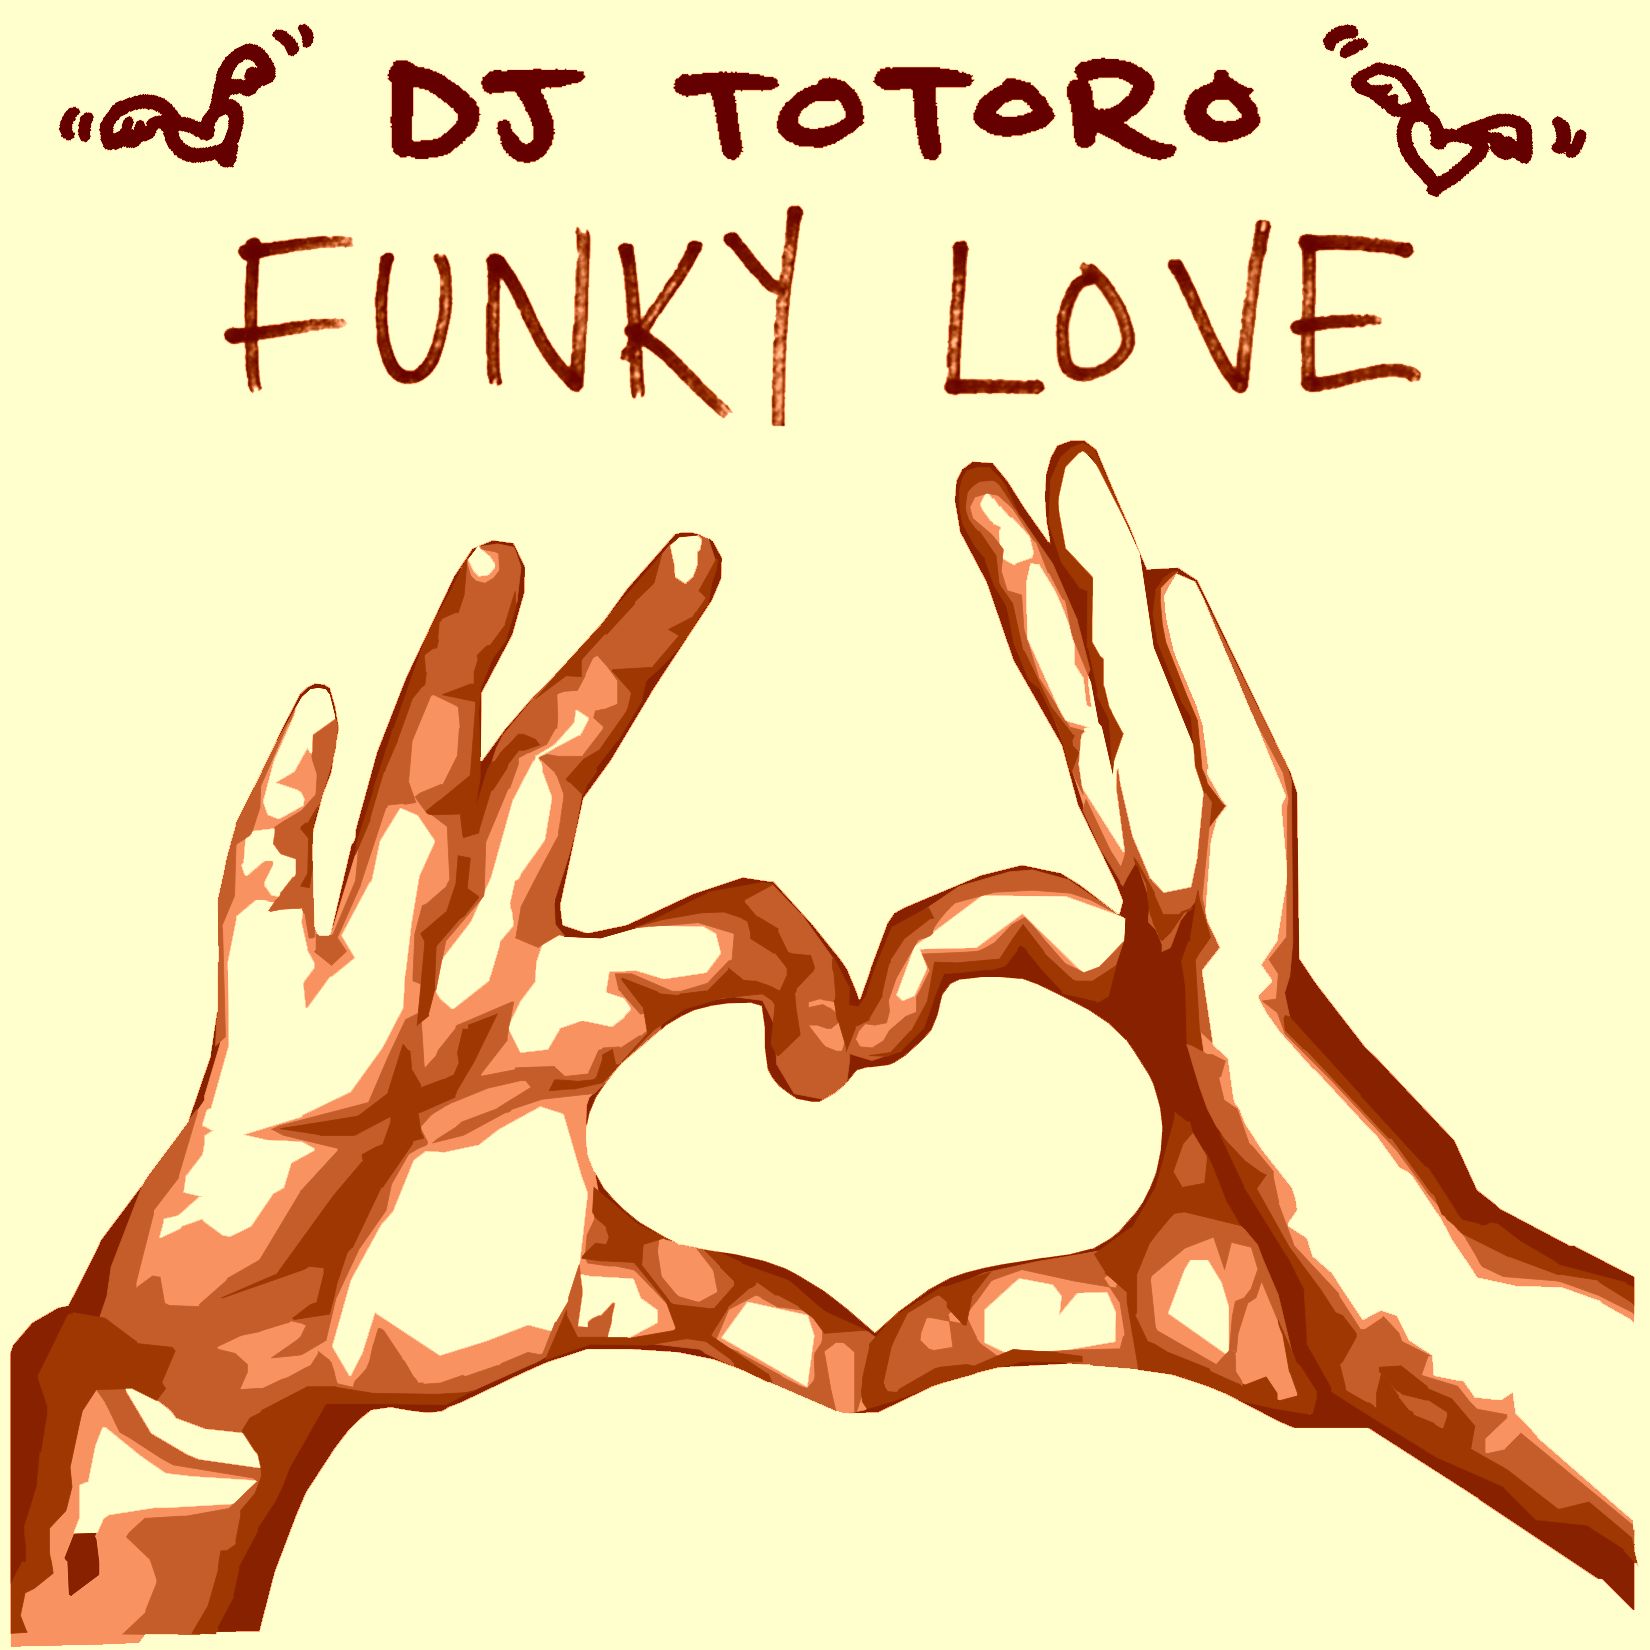 funky DJ Totoro